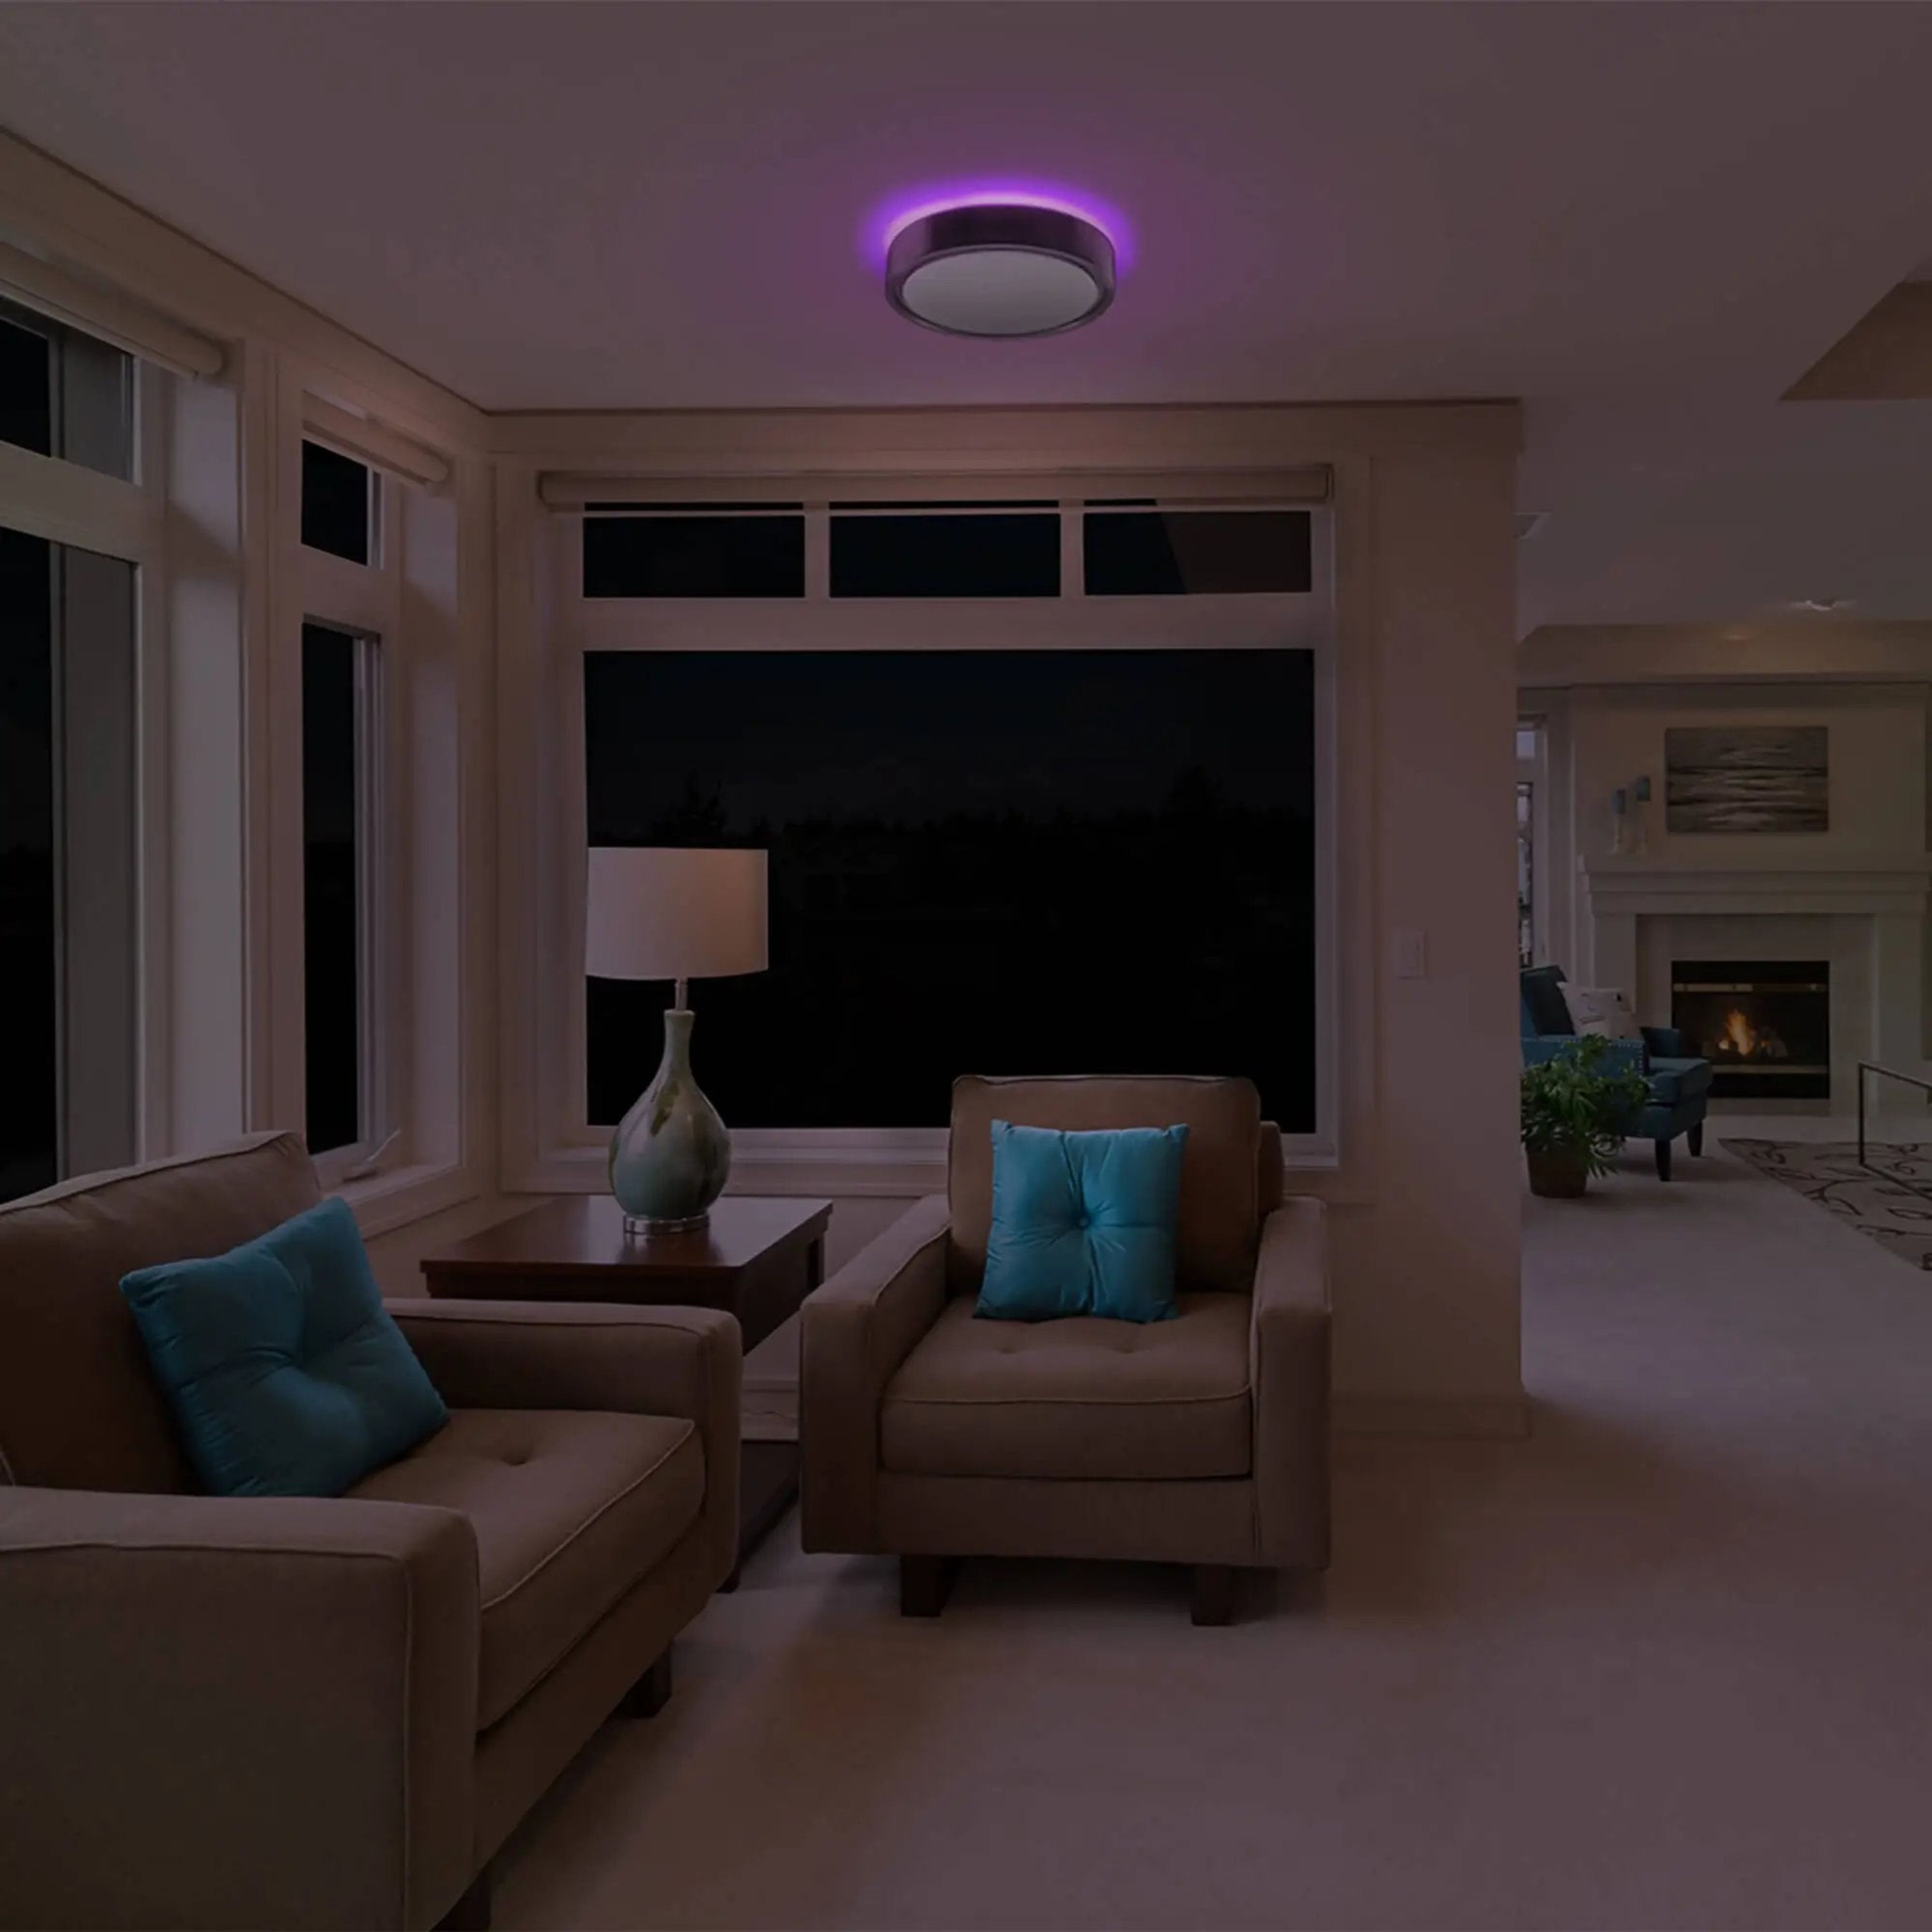 KODA 14" LED Ceiling Light with Mood Lighting and Motion Sensor